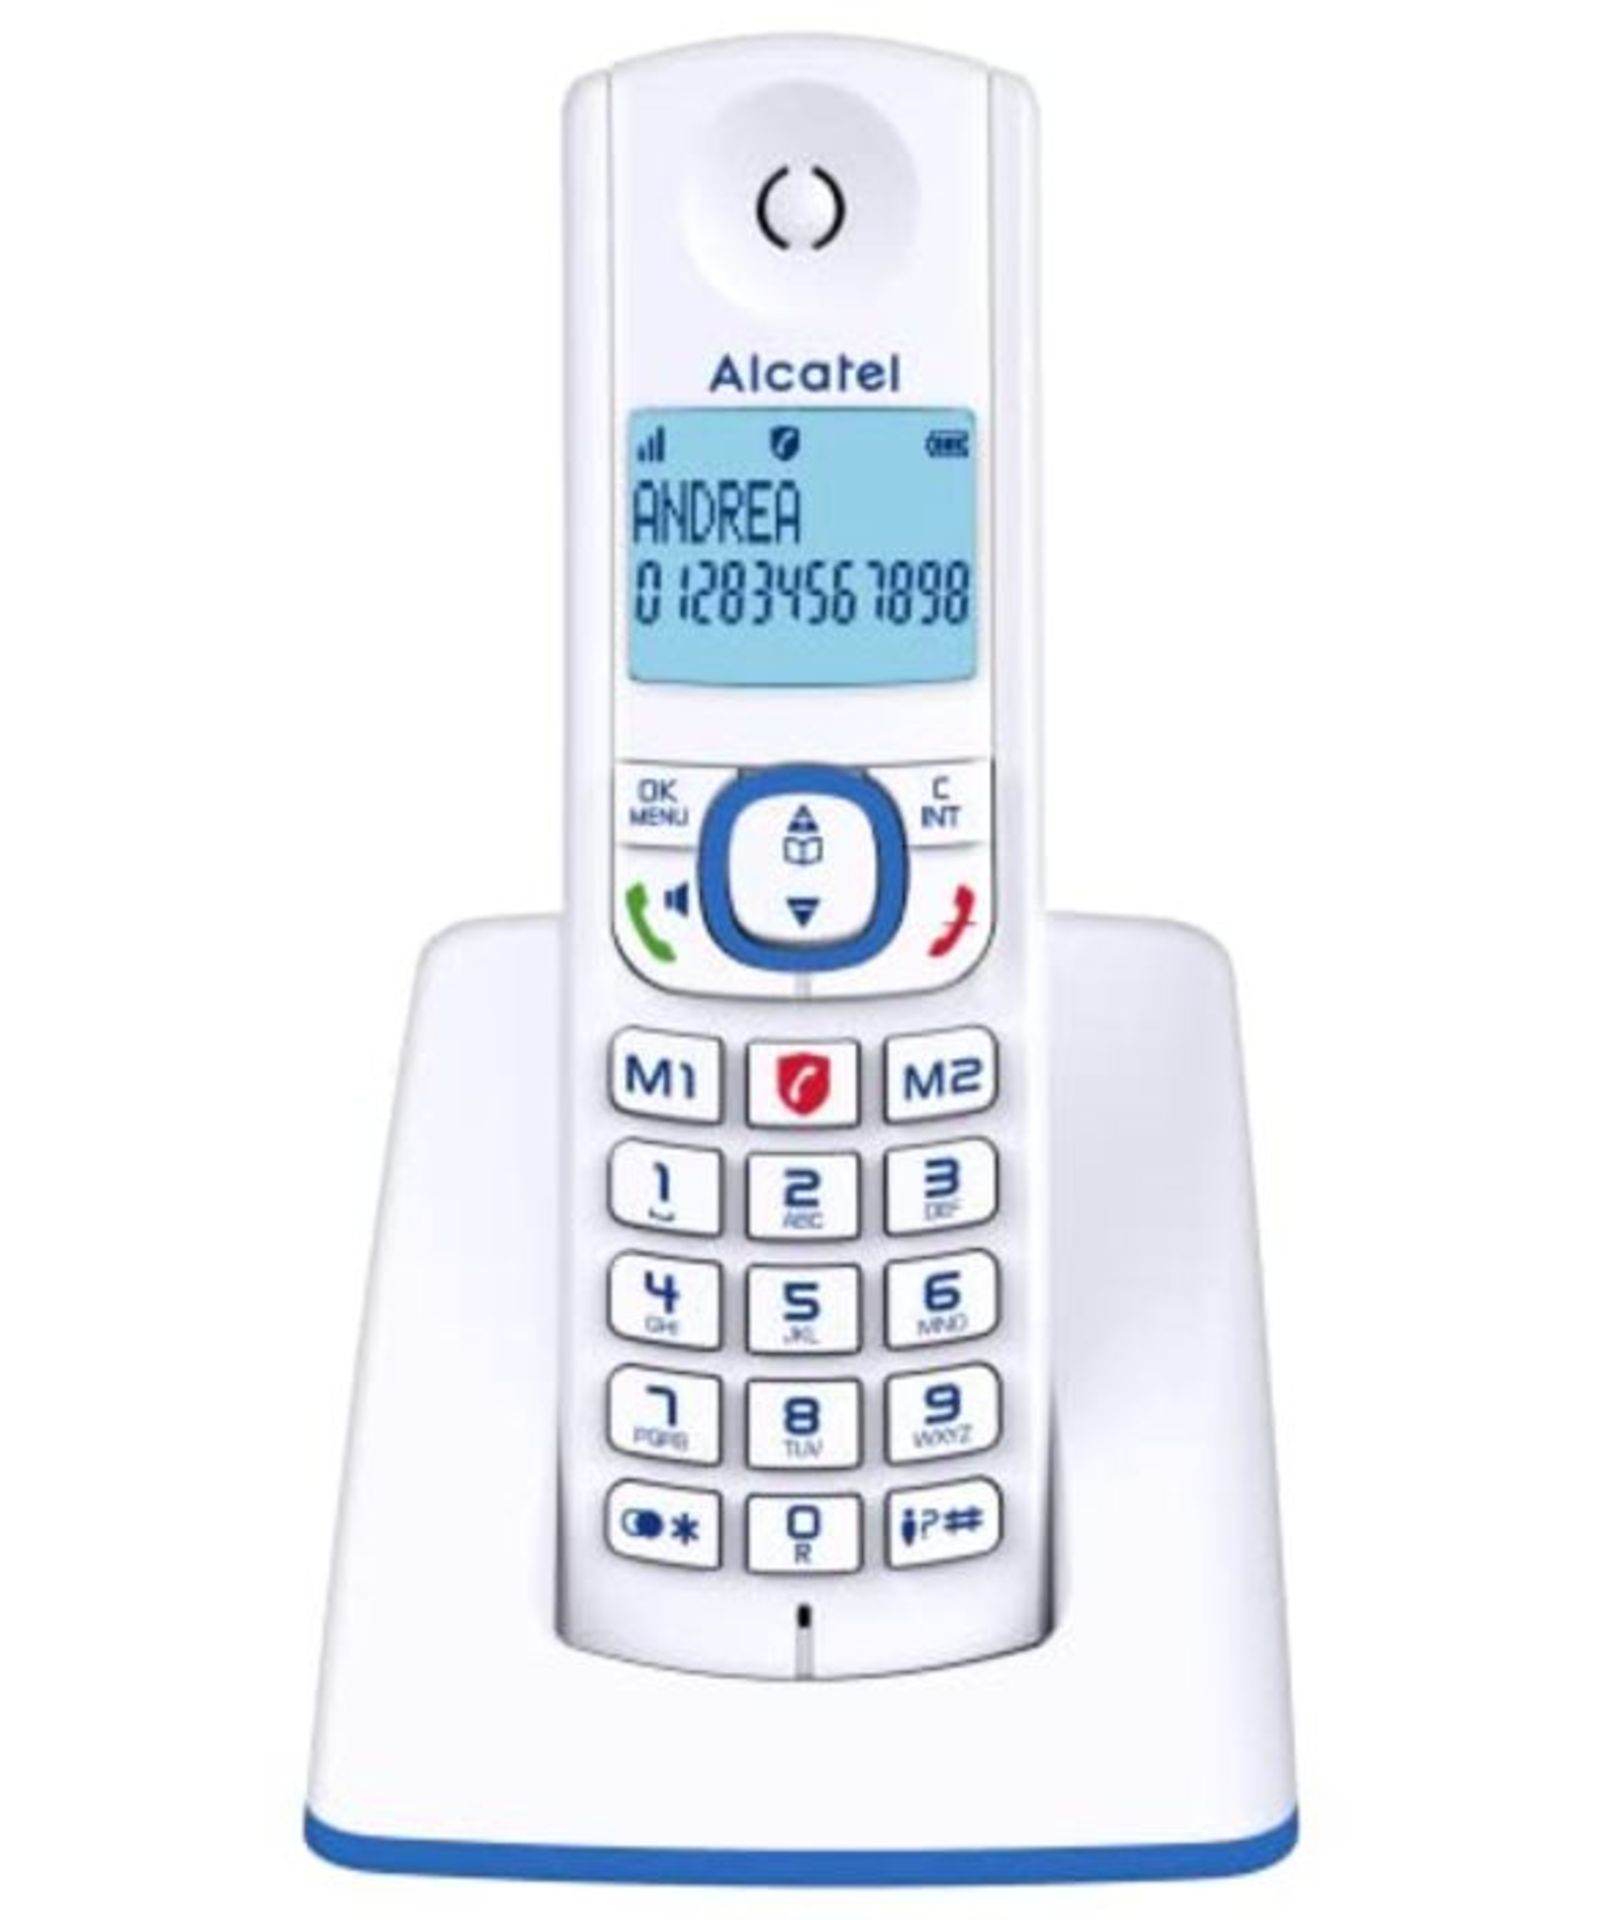 Alcatel F530 - Téléphone sans fil DECT design aux coloris contemporains, Mains libre